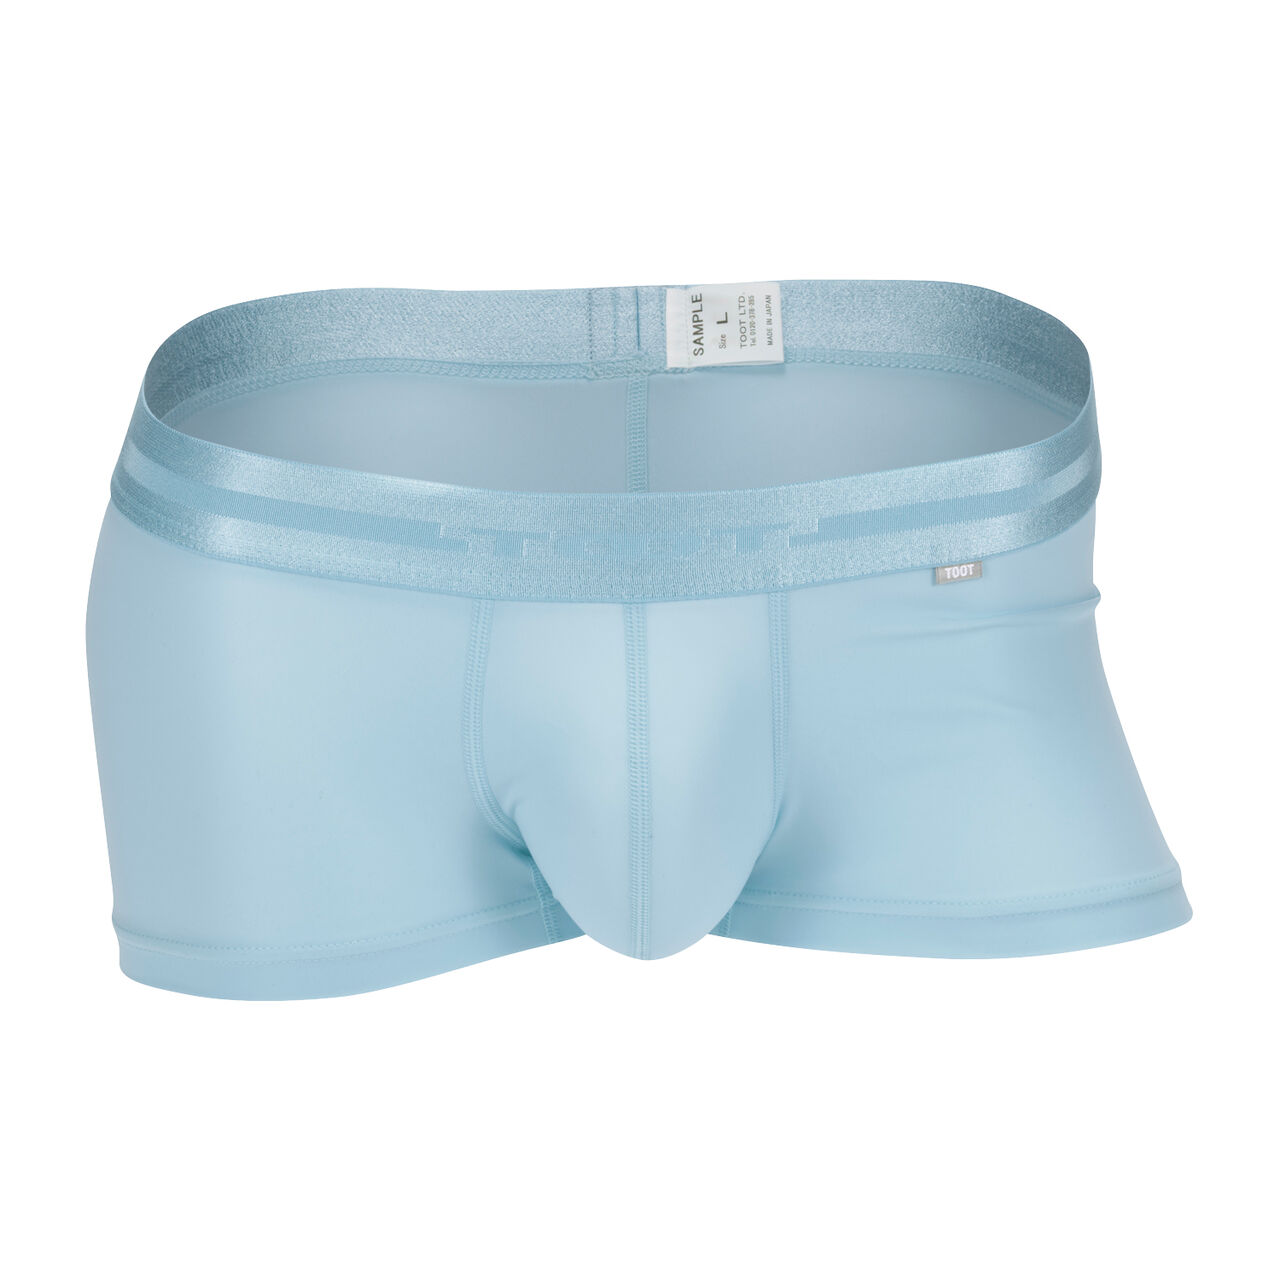 ReNEW TOOT NYLON | Men's Underwear brand TOOT official website